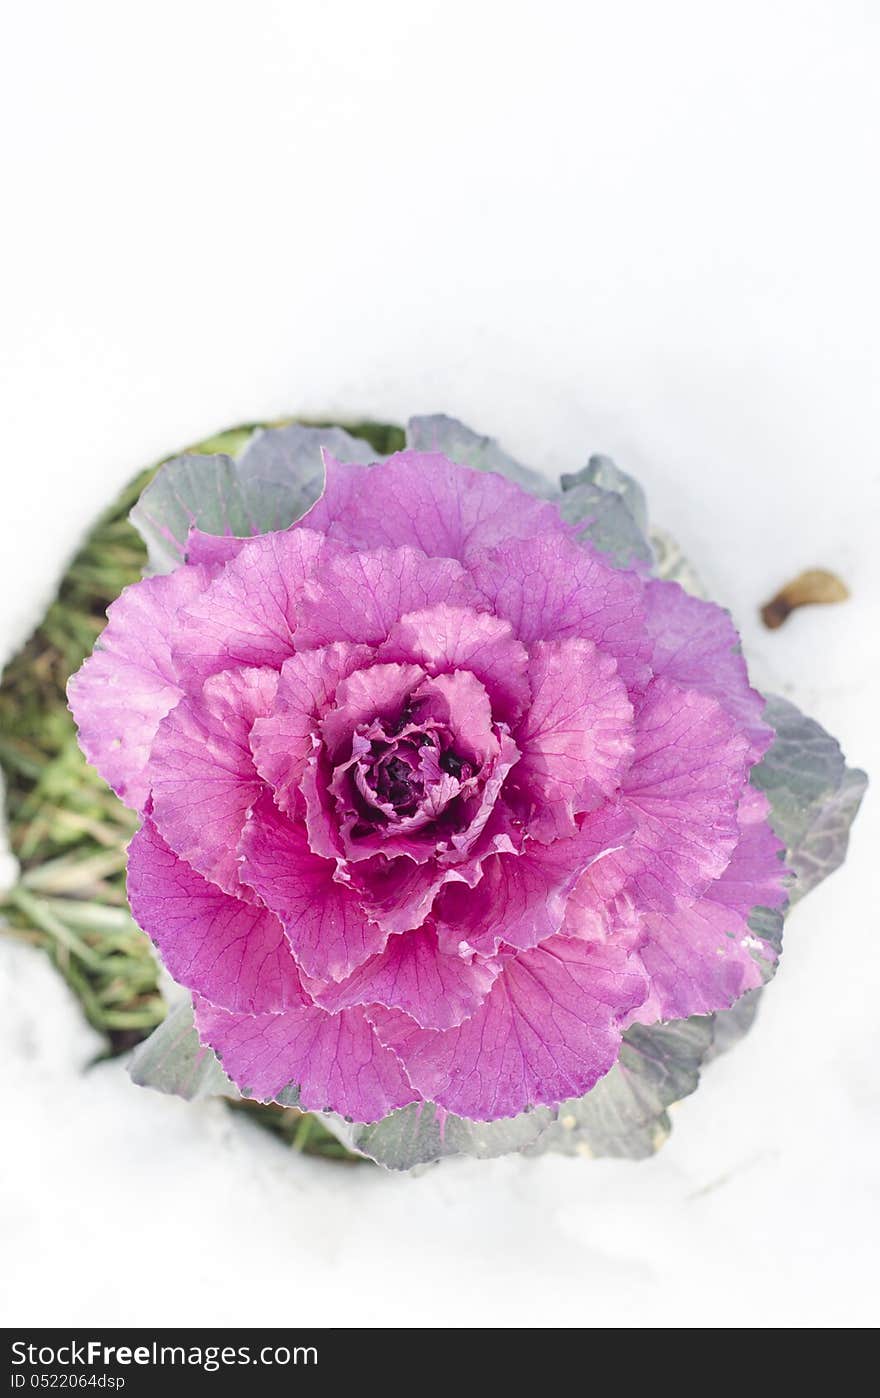 Ornamental purple cabbage in the snow. Ornamental purple cabbage in the snow